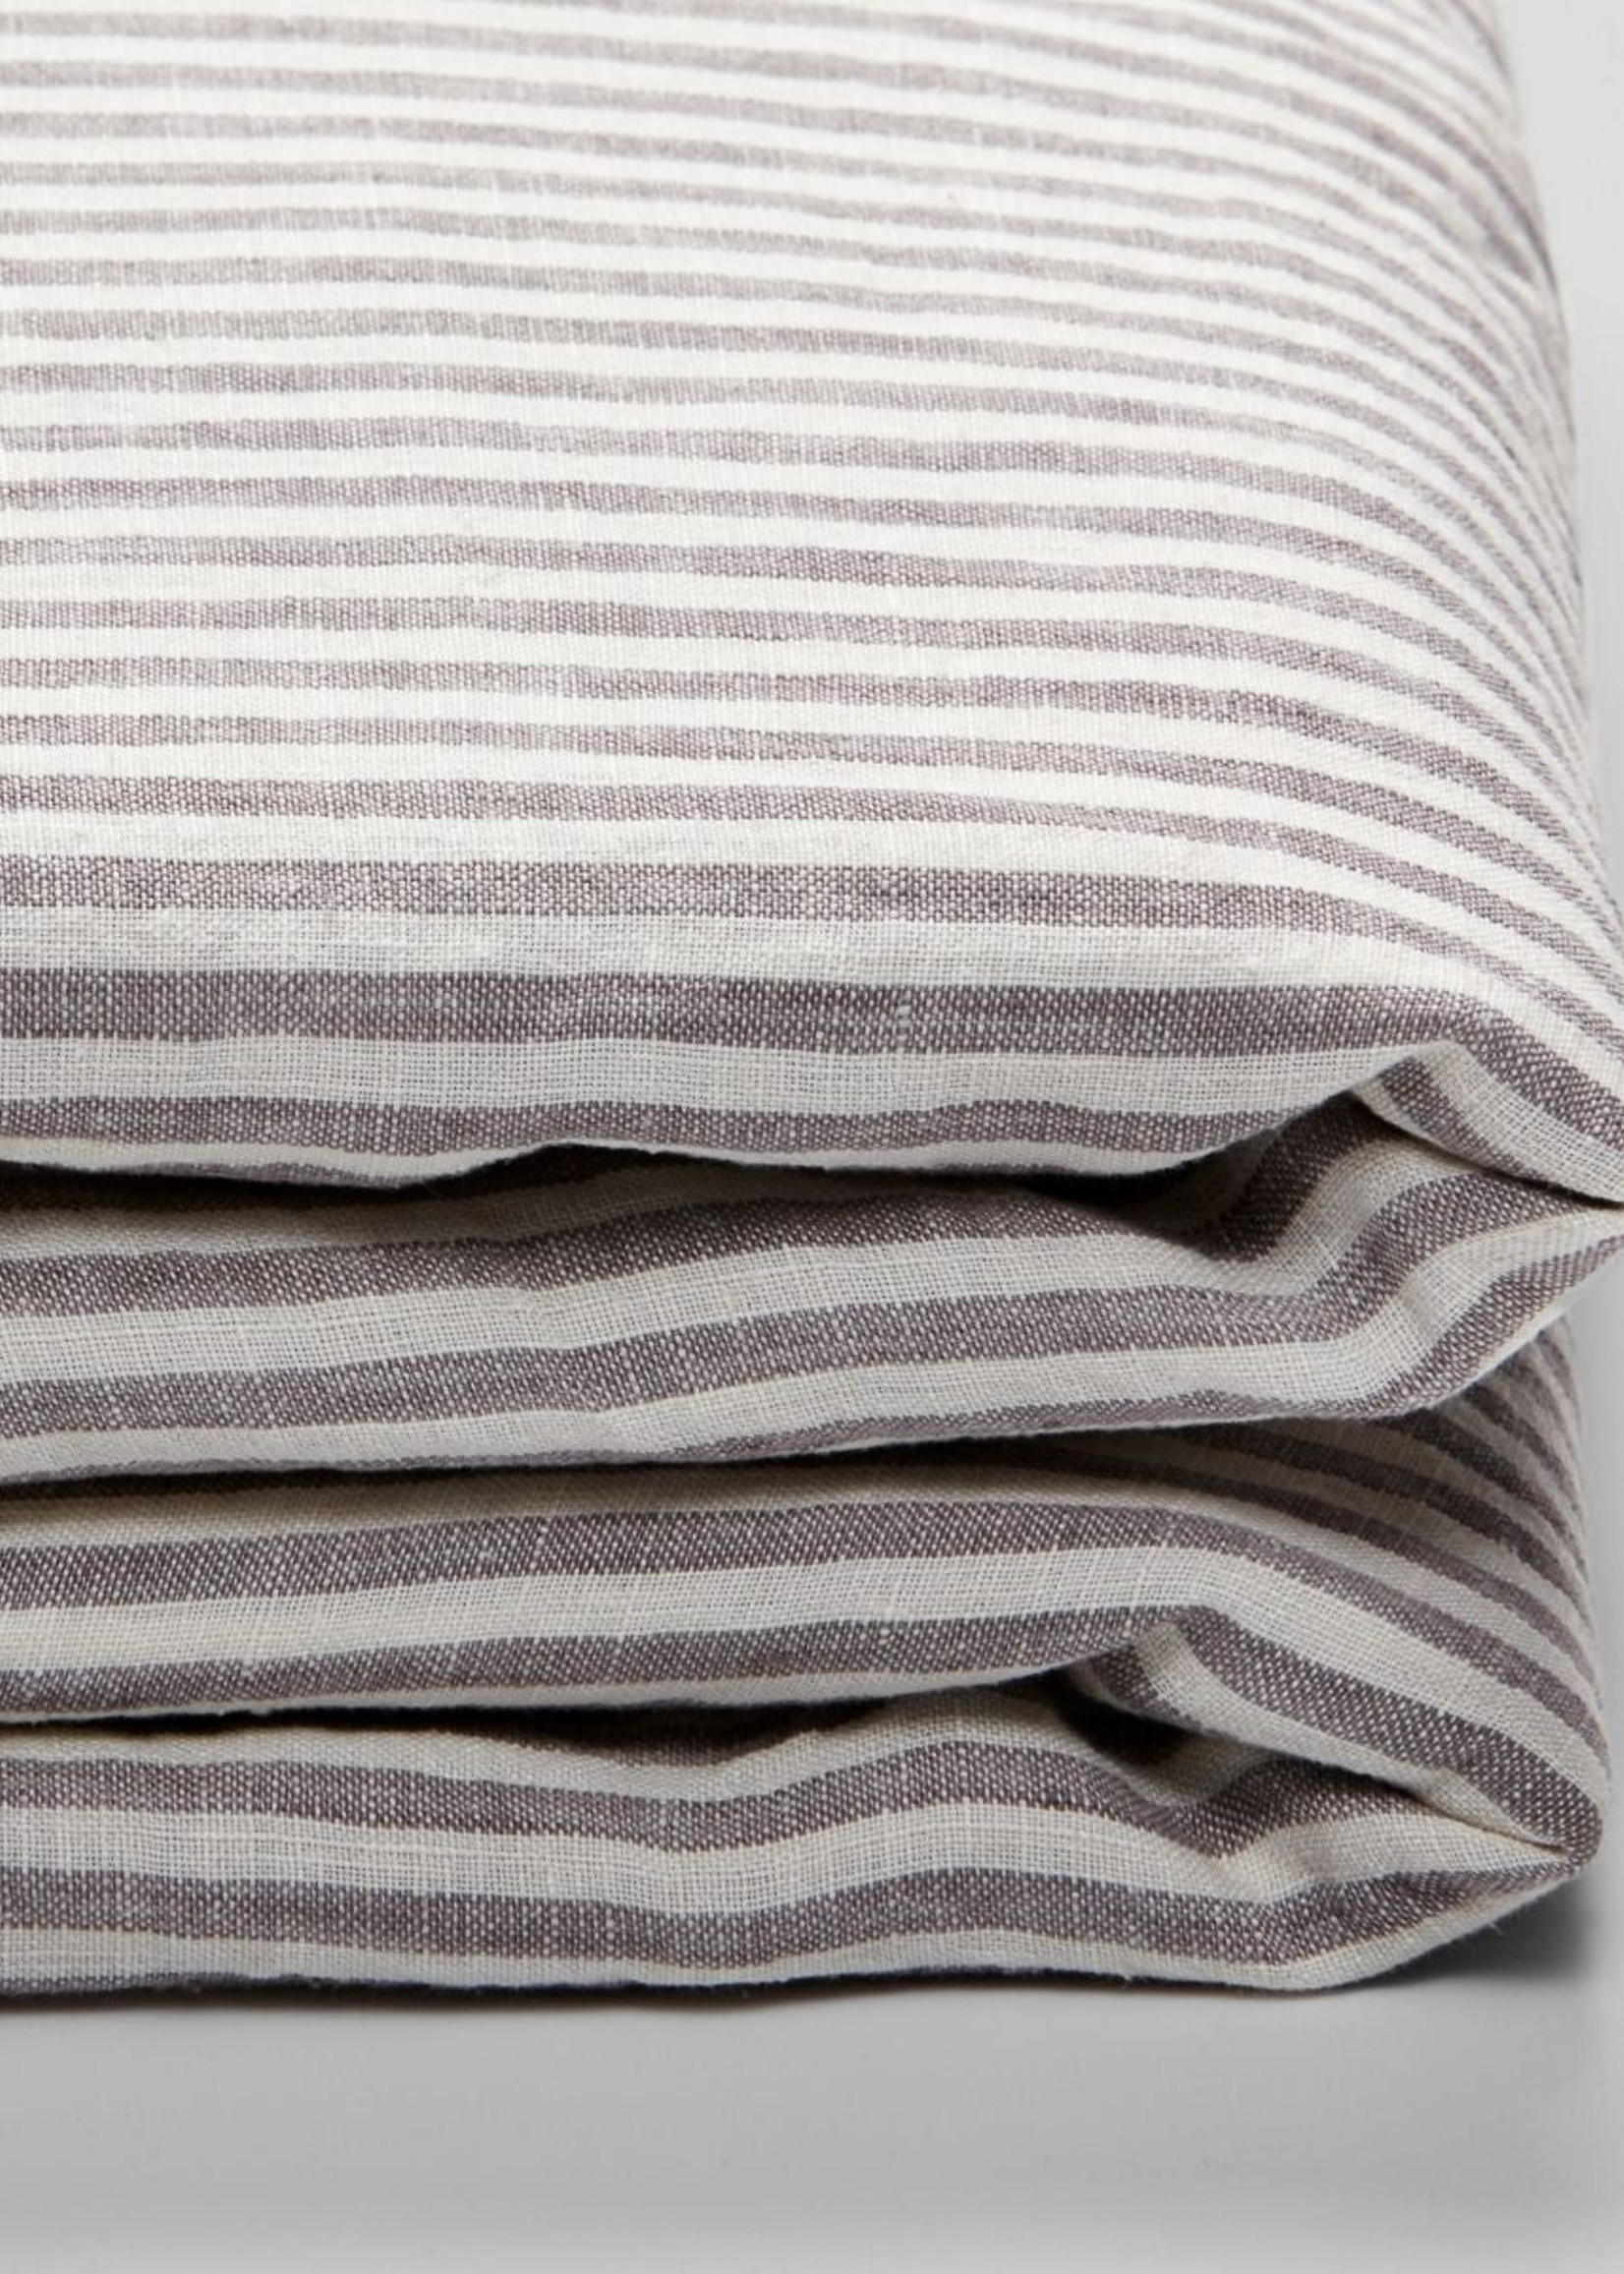 Linen Duvet in Grey & White Stripe